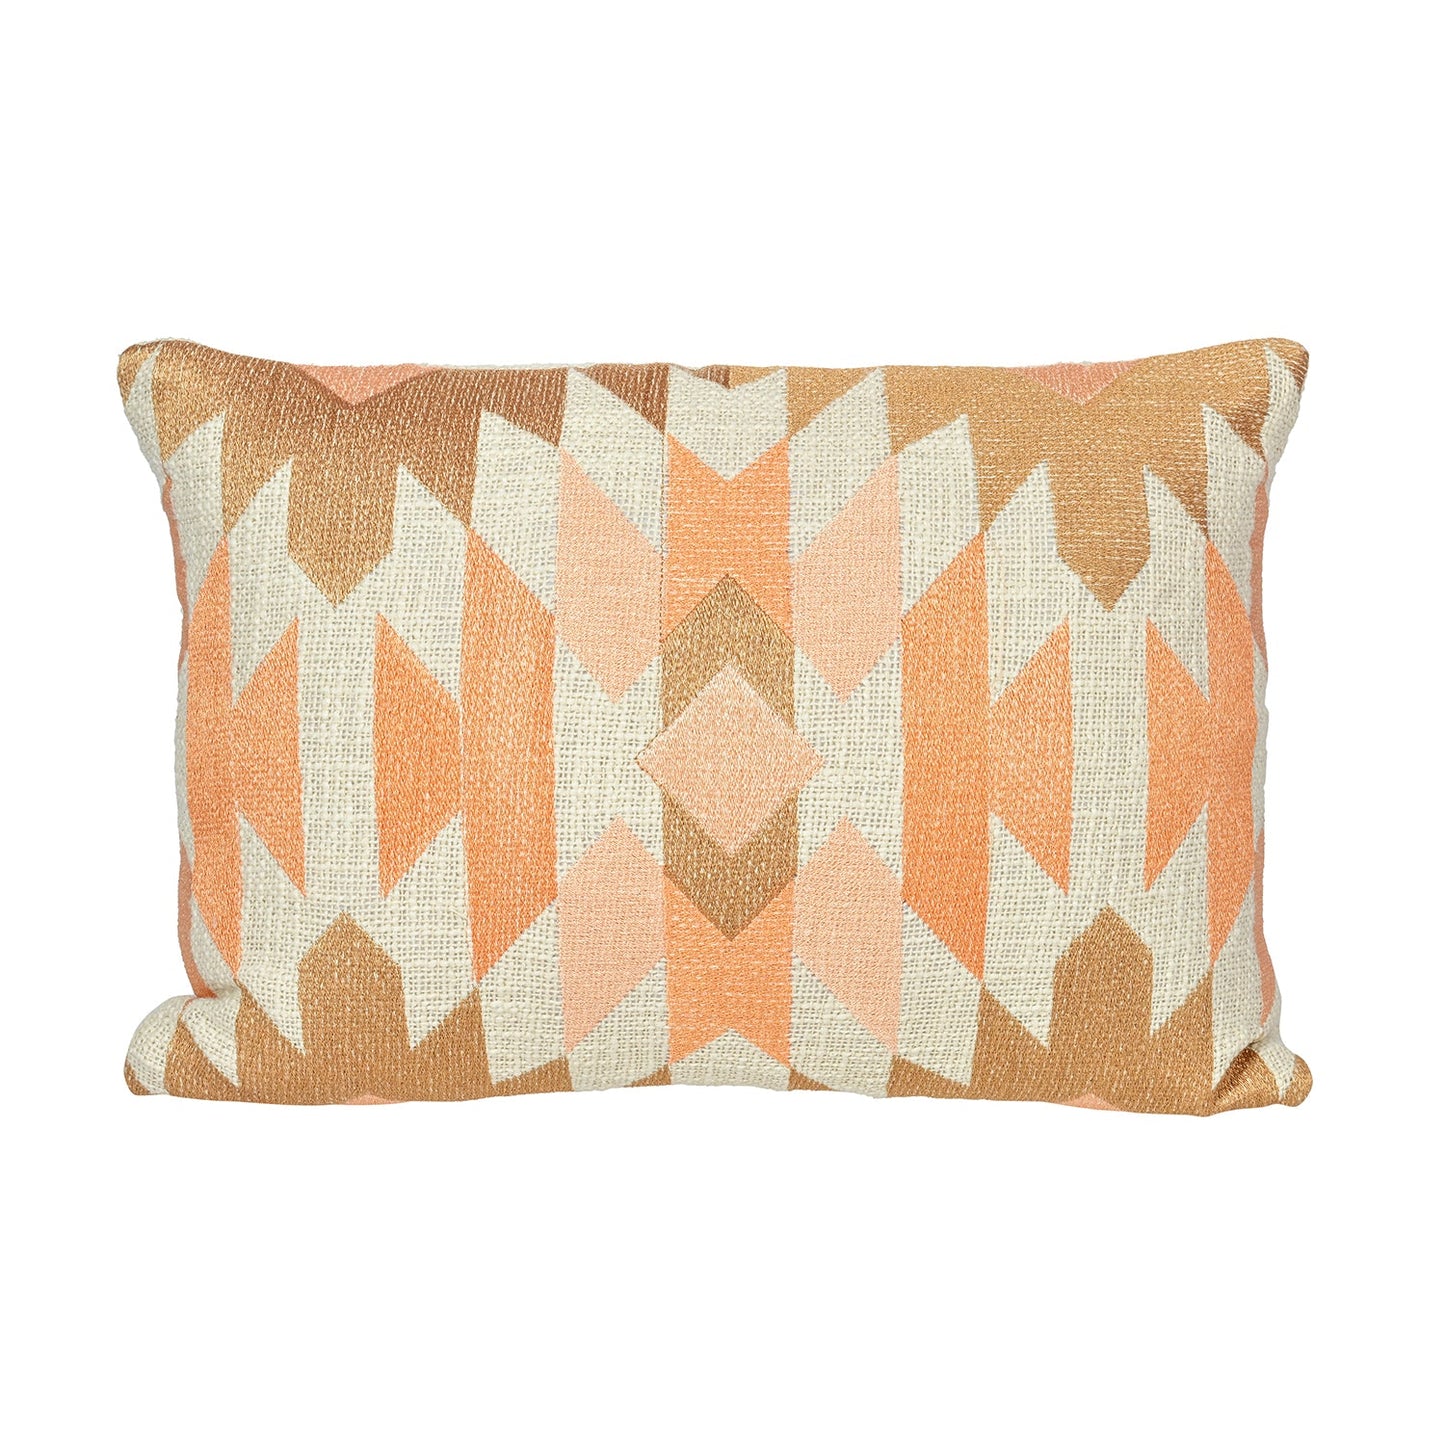 Peach Geometric Grandeur Throw Pillow Cover - I